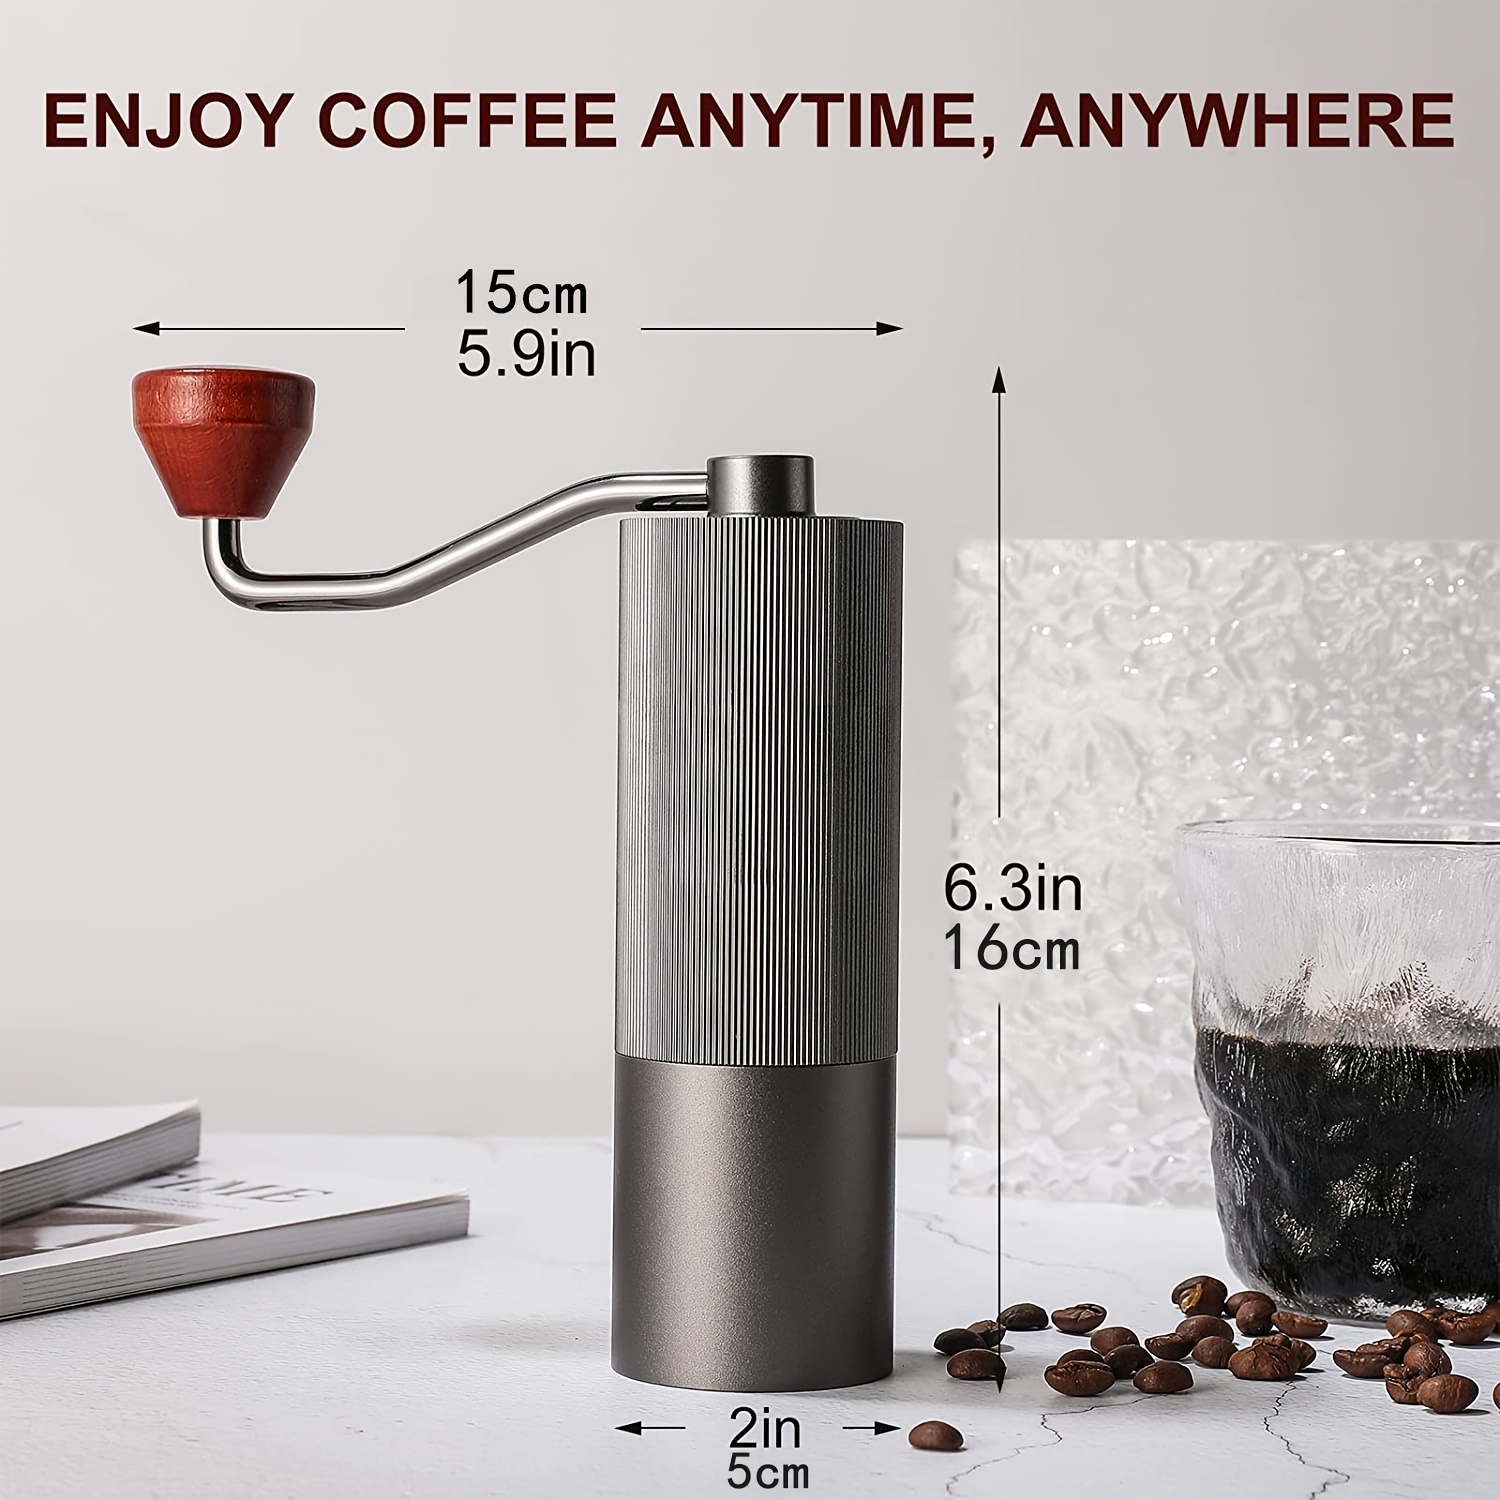 Molinillo de café manual de fresas – Ajustes ajustables para prensa  francesa, expreso, café por goteo, café turco – Molinillo de mano de acero